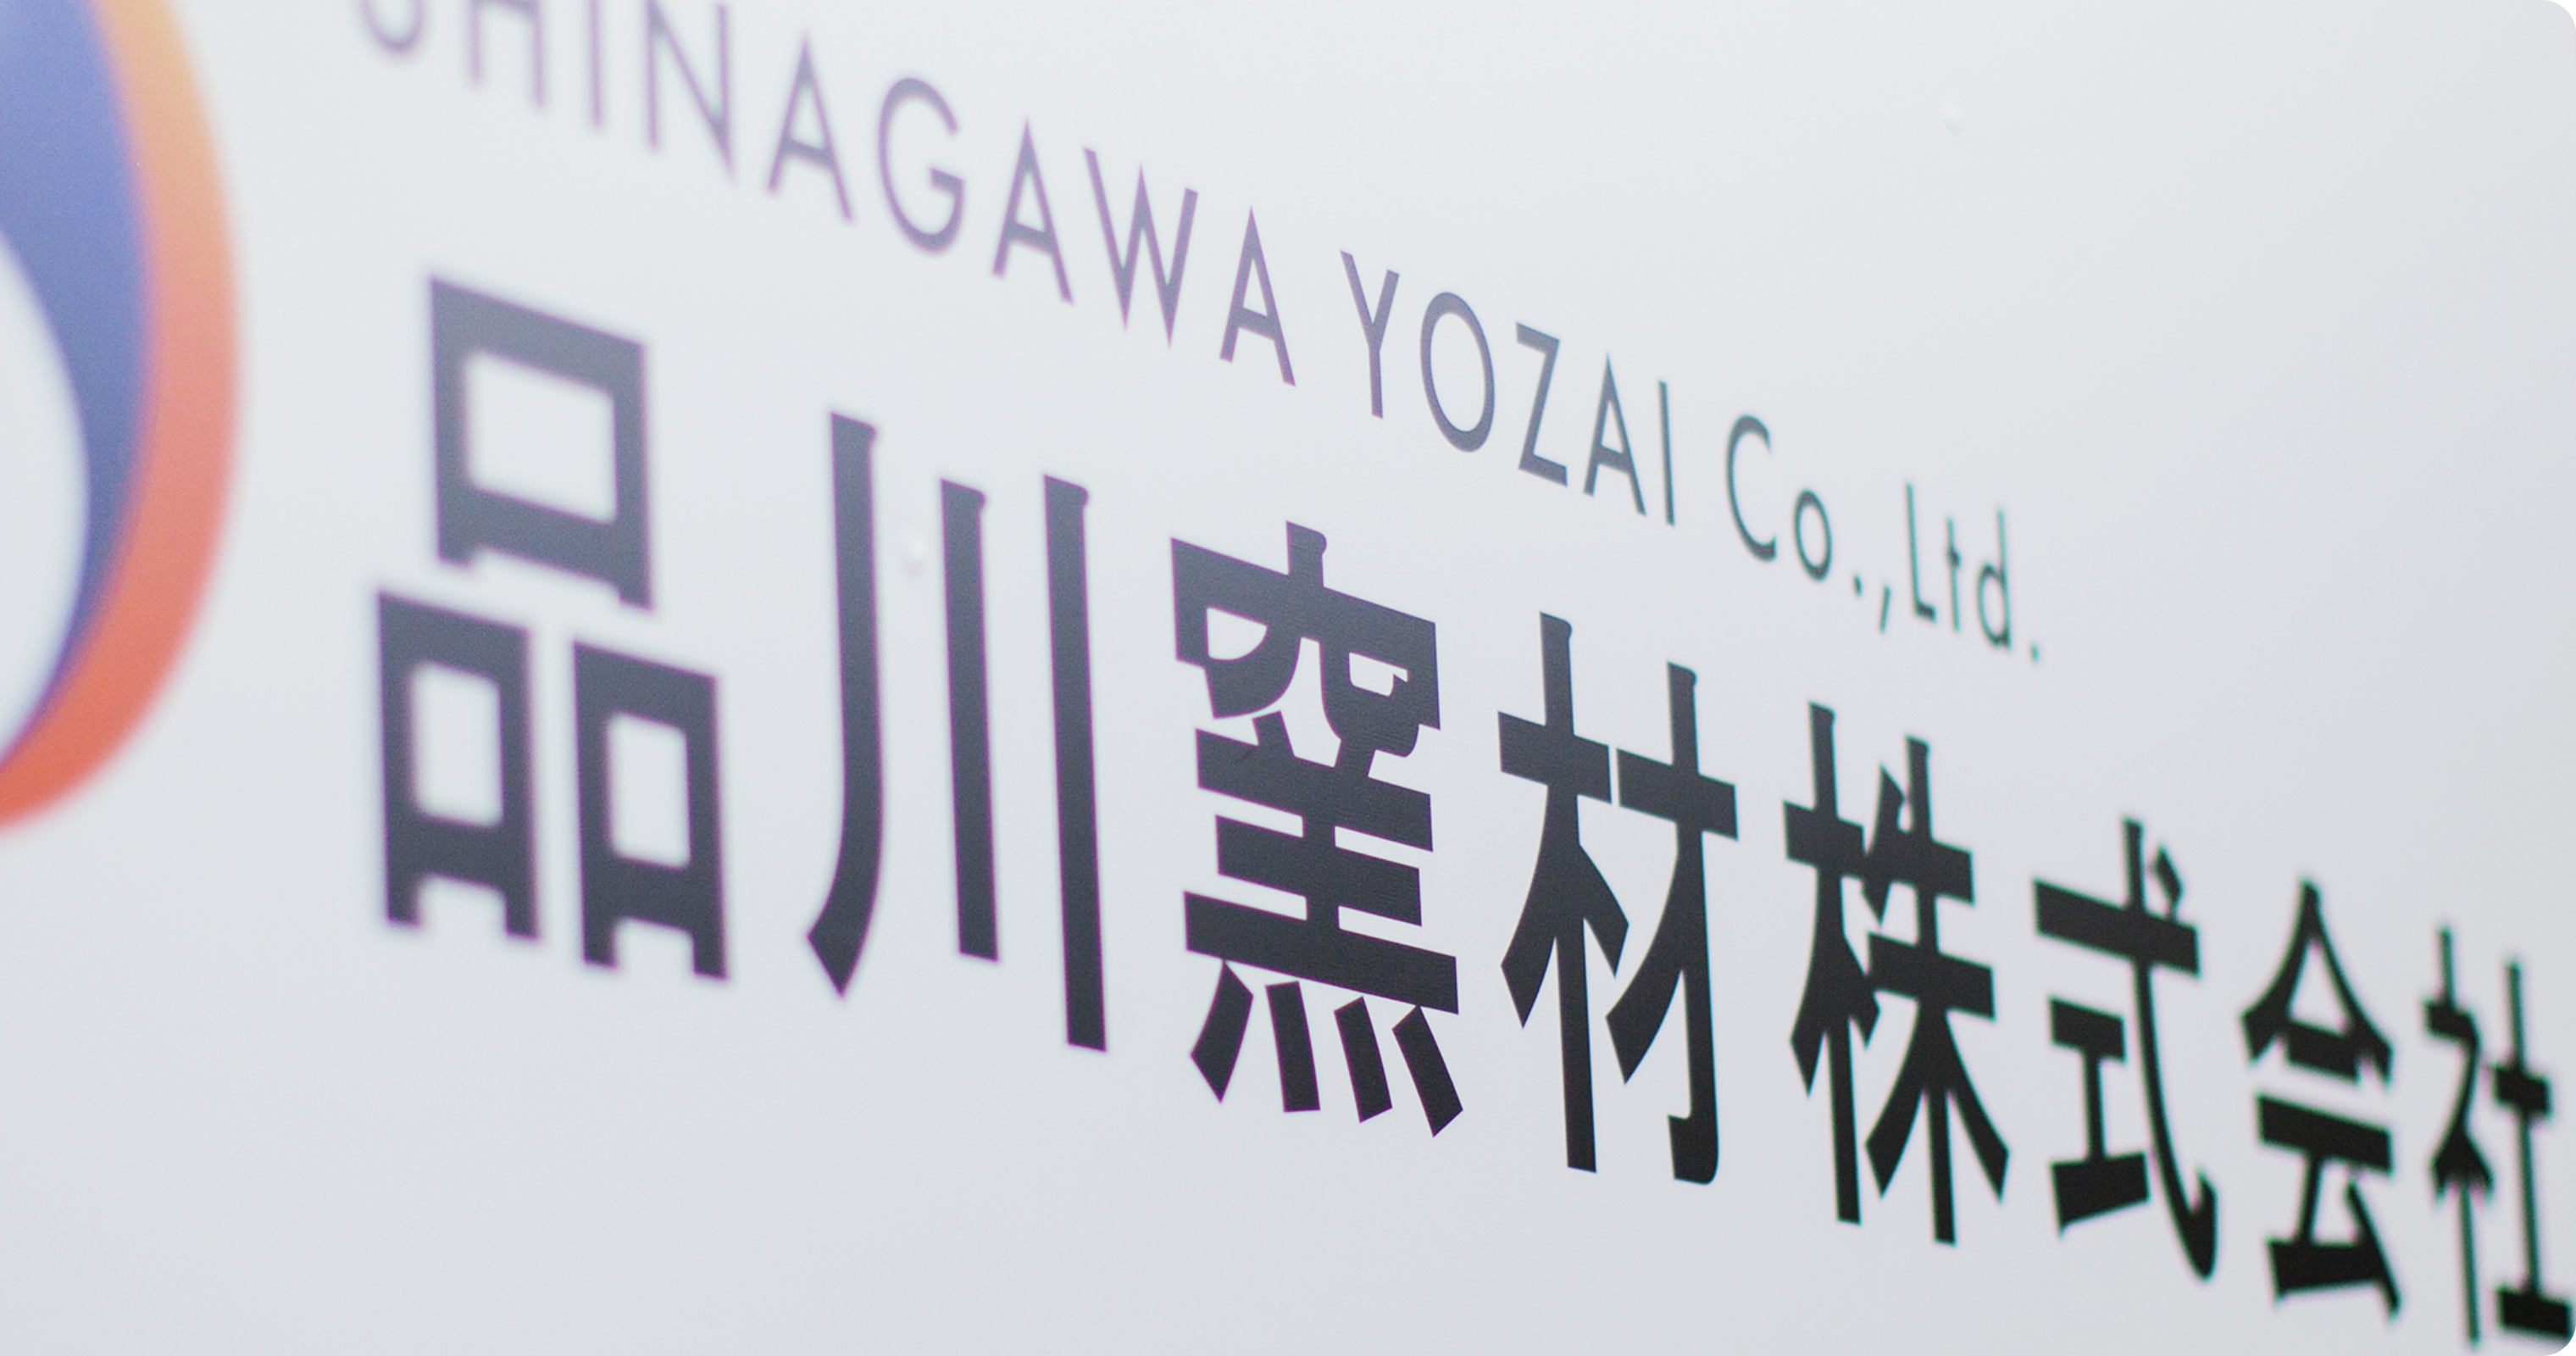 SHINAGAWA YOZAI Co.,Ltd. 品川窯材株式会社